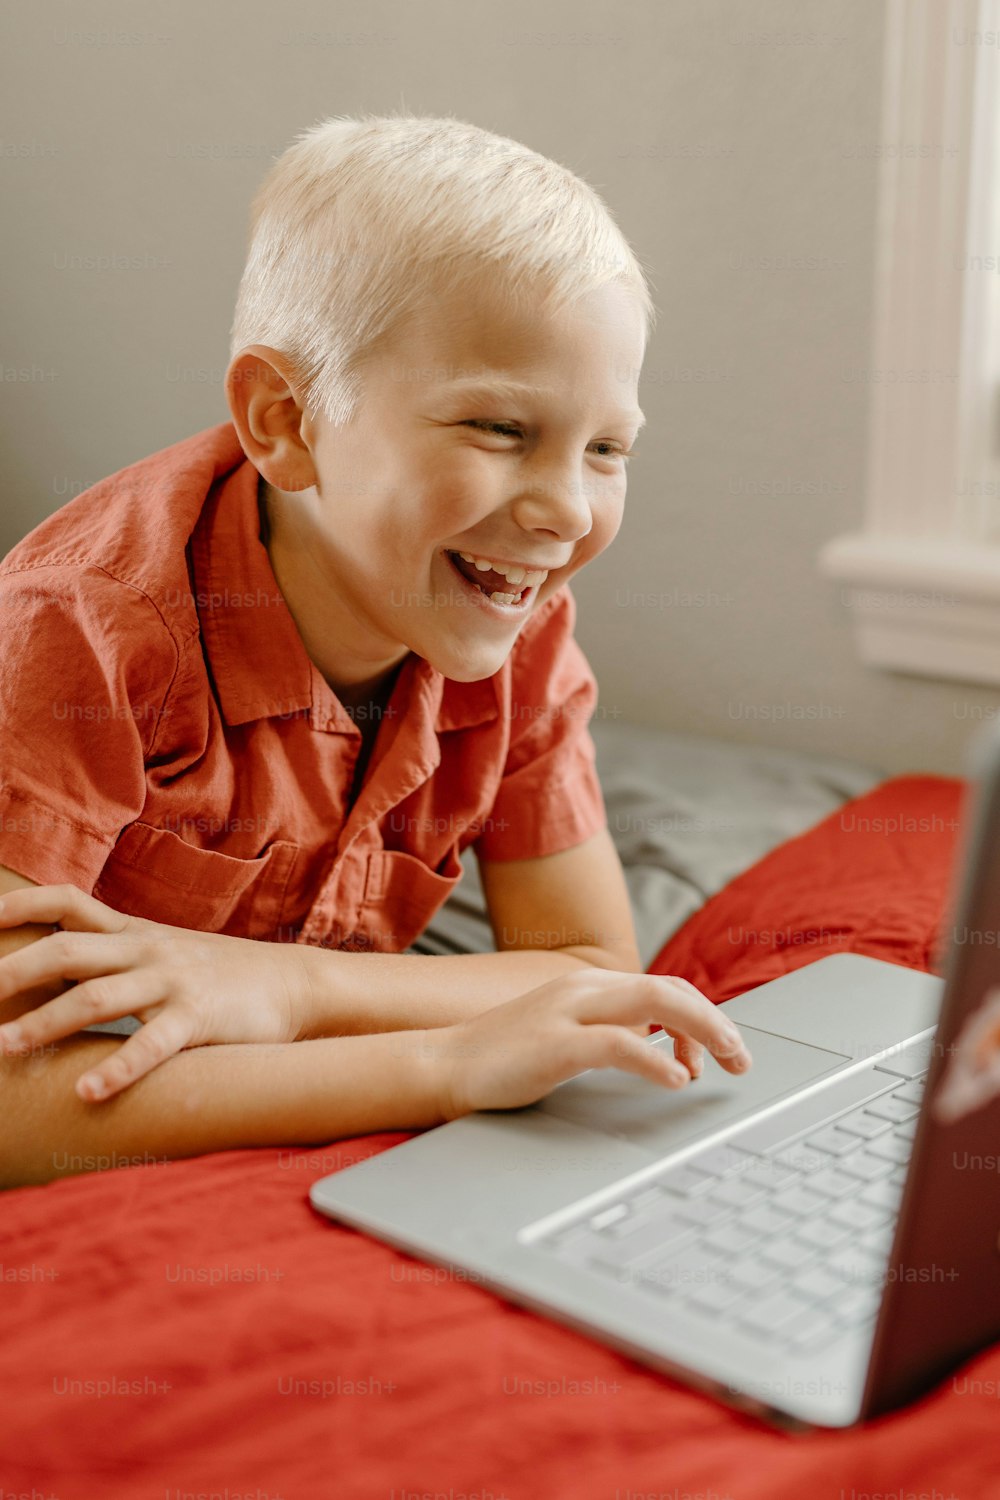 한 어린 소년이 노트북을 보며 미소를 짓고 있다